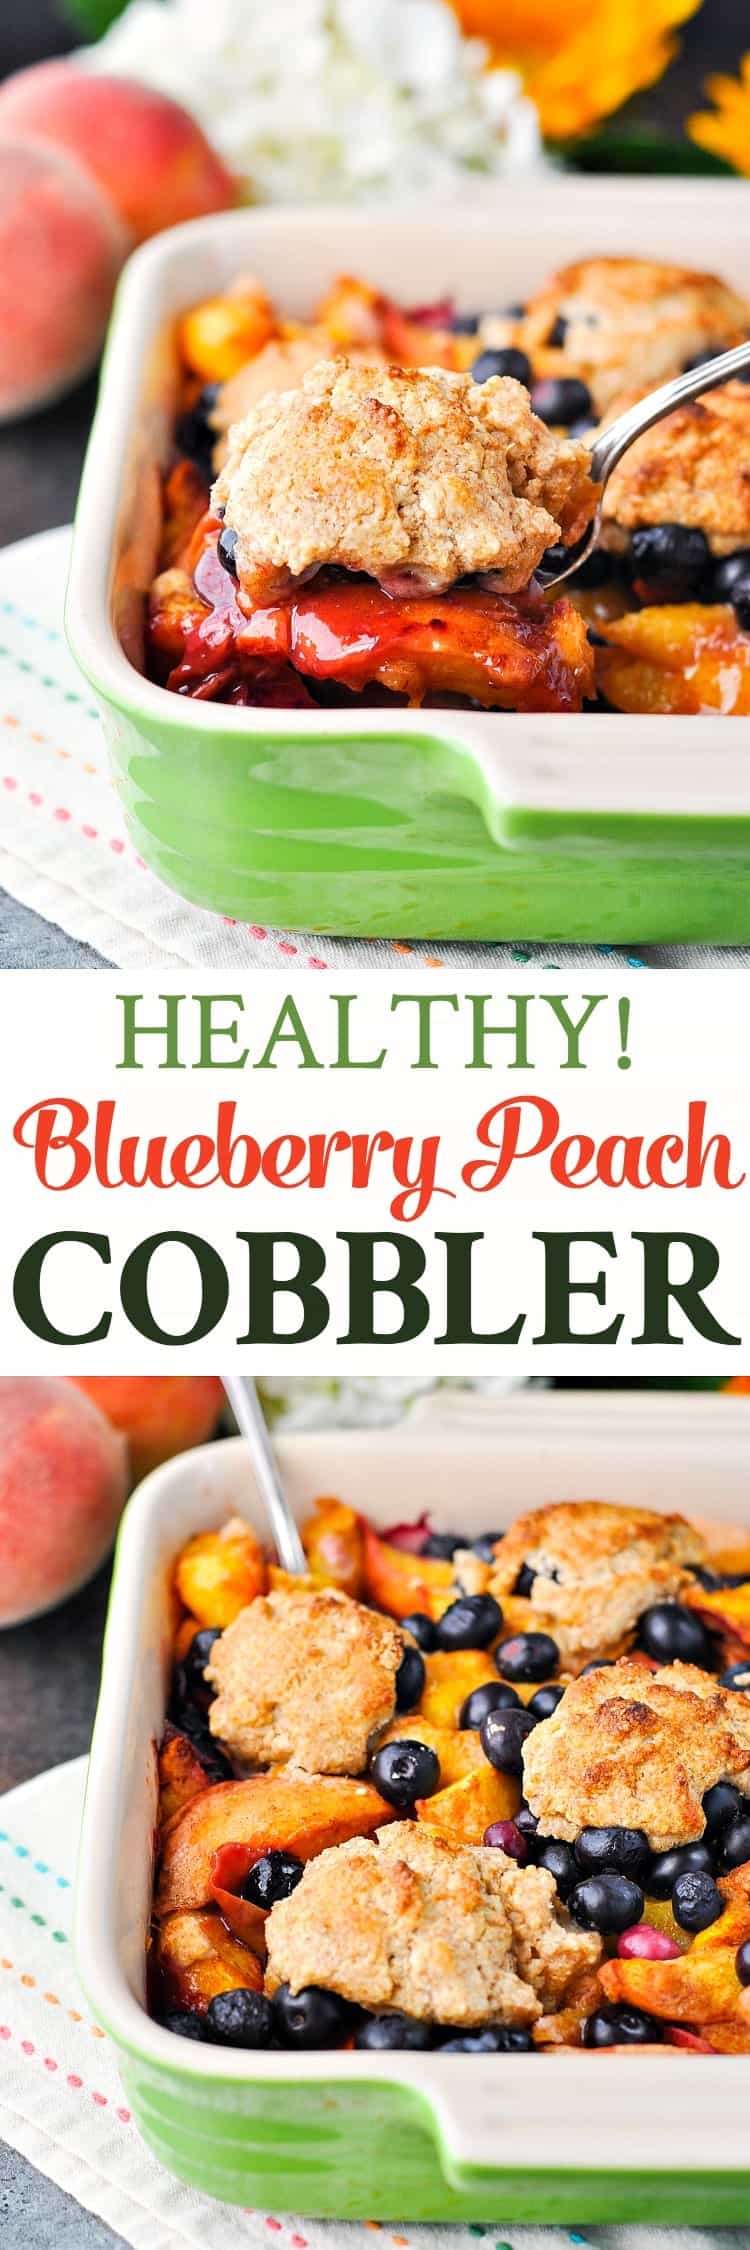 Healthy Blueberry Peach Cobbler! Peach Recipes | Peach Cobbler Easy | Blueberry Recipes | Blueberry Cobbler | Healthy Desserts | Clean Eating Recipes | Dessert Recipes | Desserts Easy